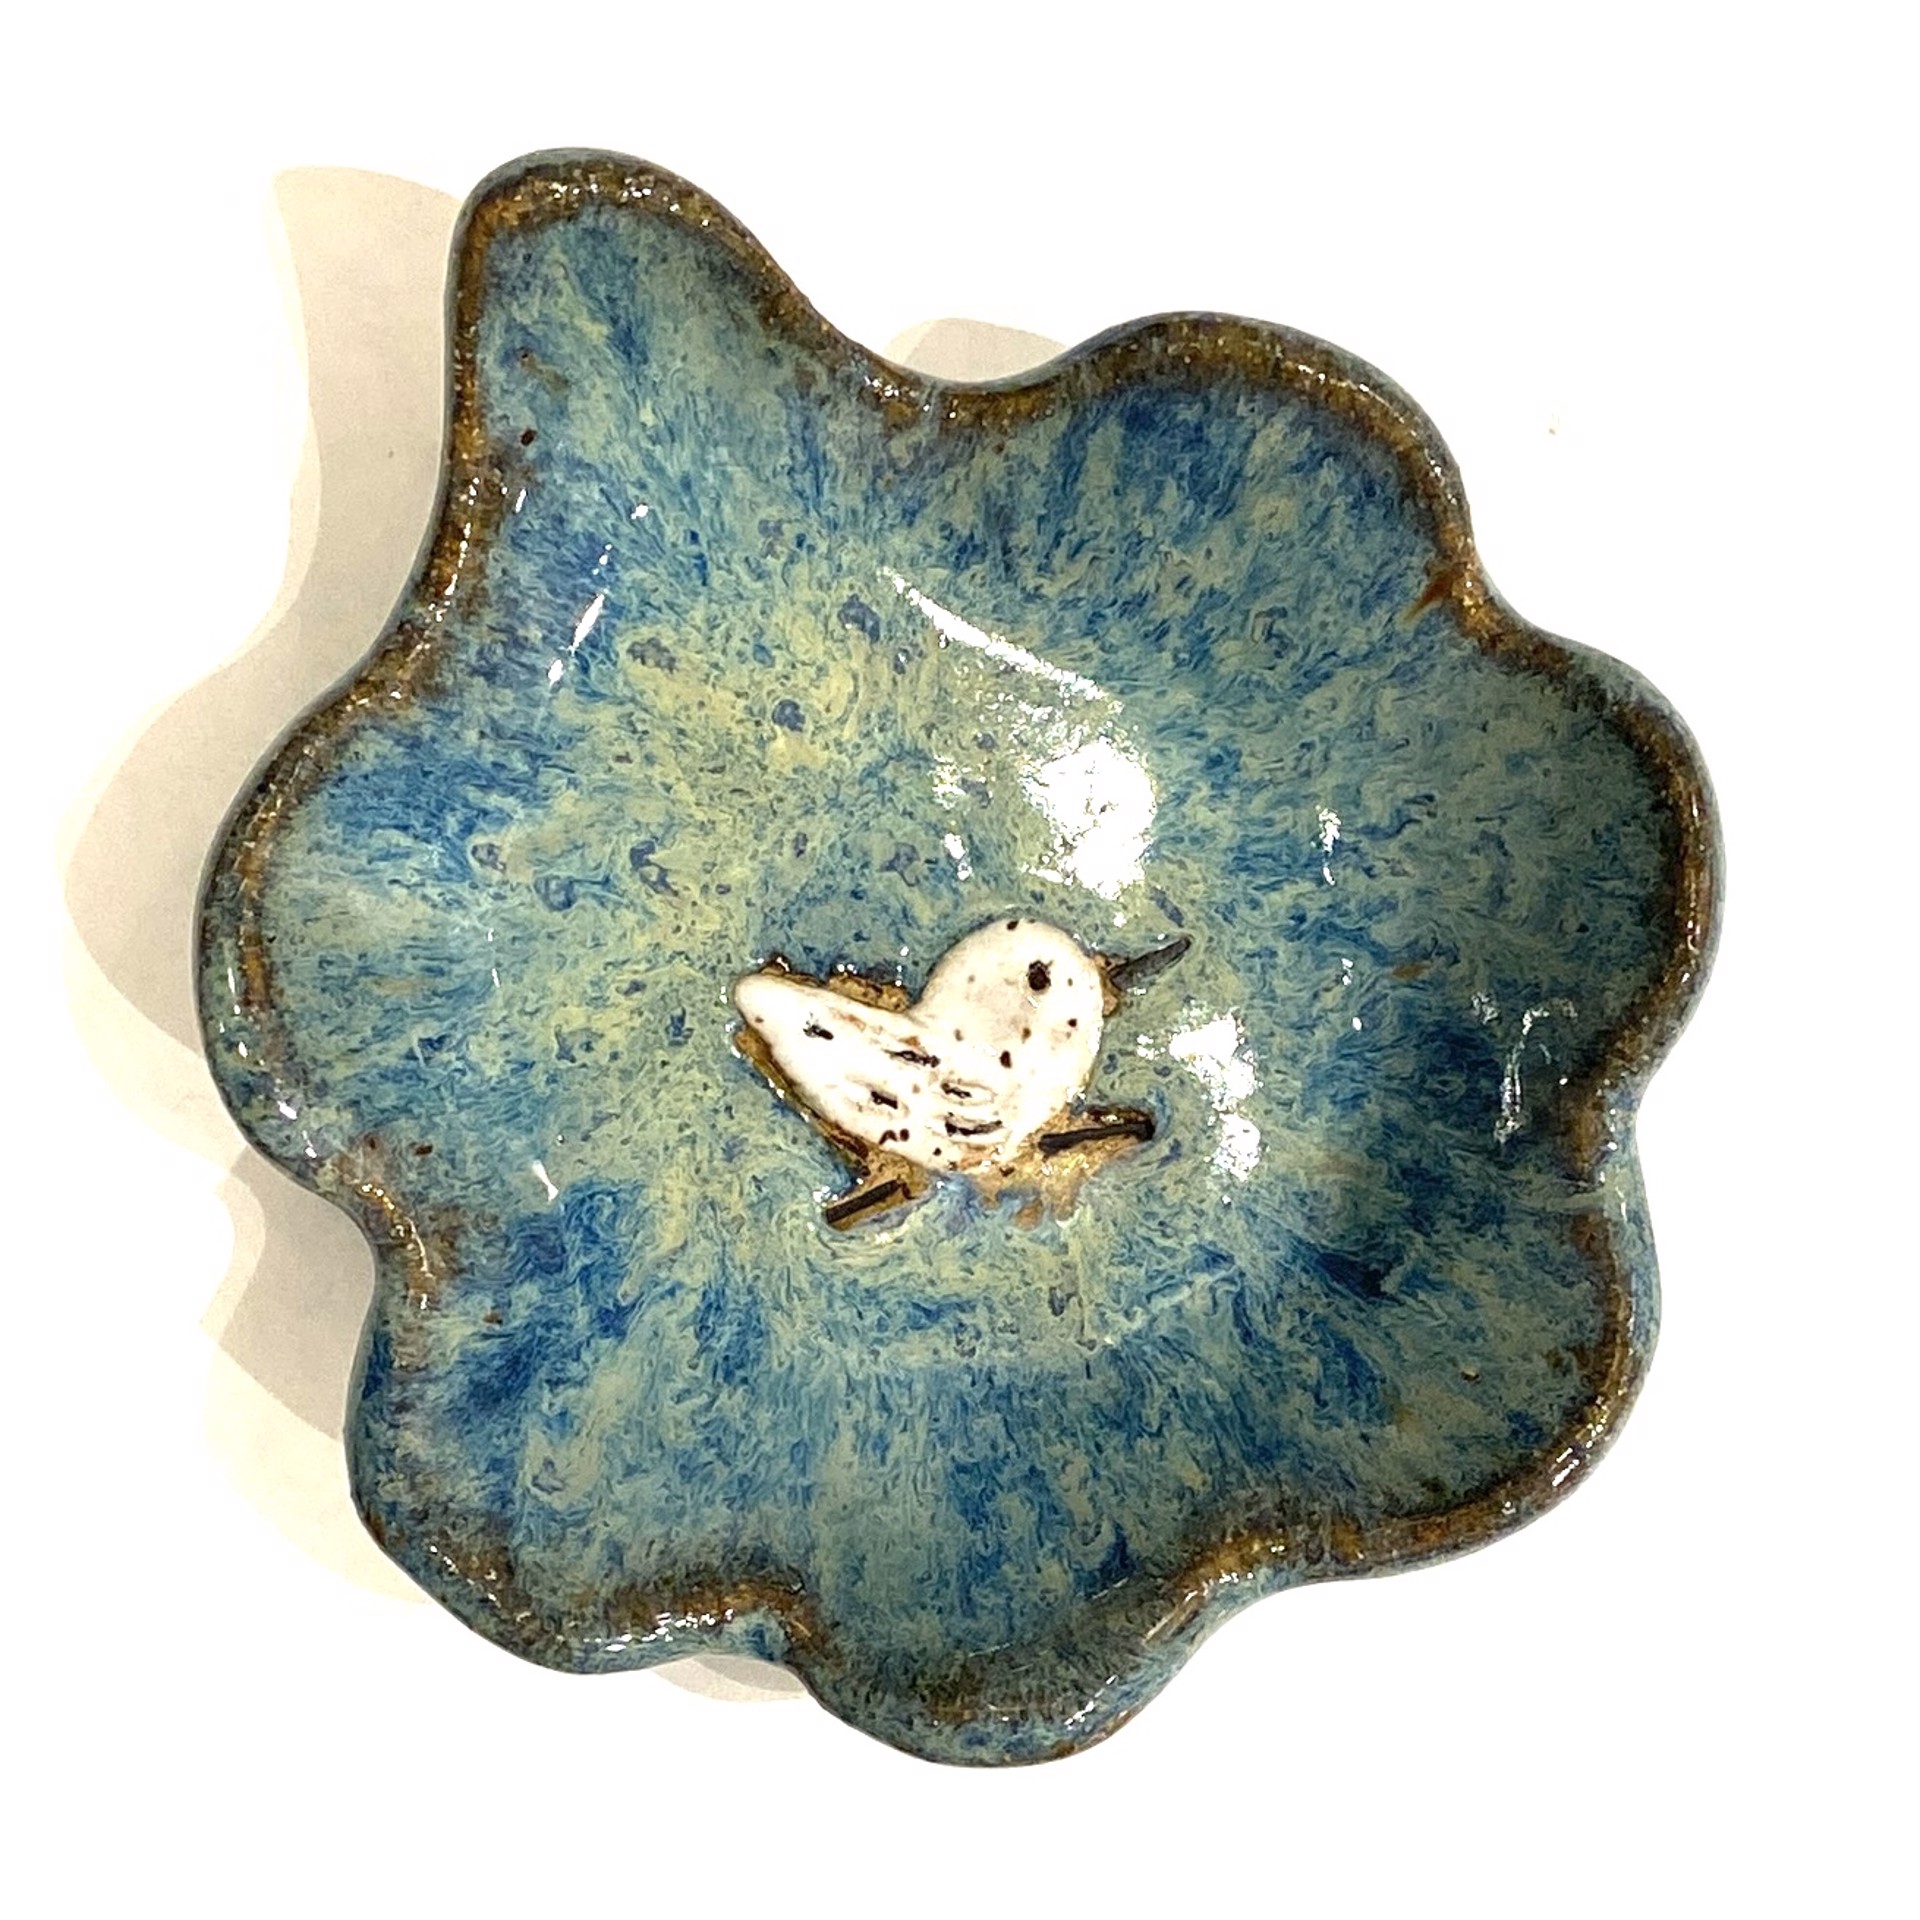 Mini Pool Dish with Sandpiper (Blue Glaze) LG23-1192 by Jim & Steffi Logan